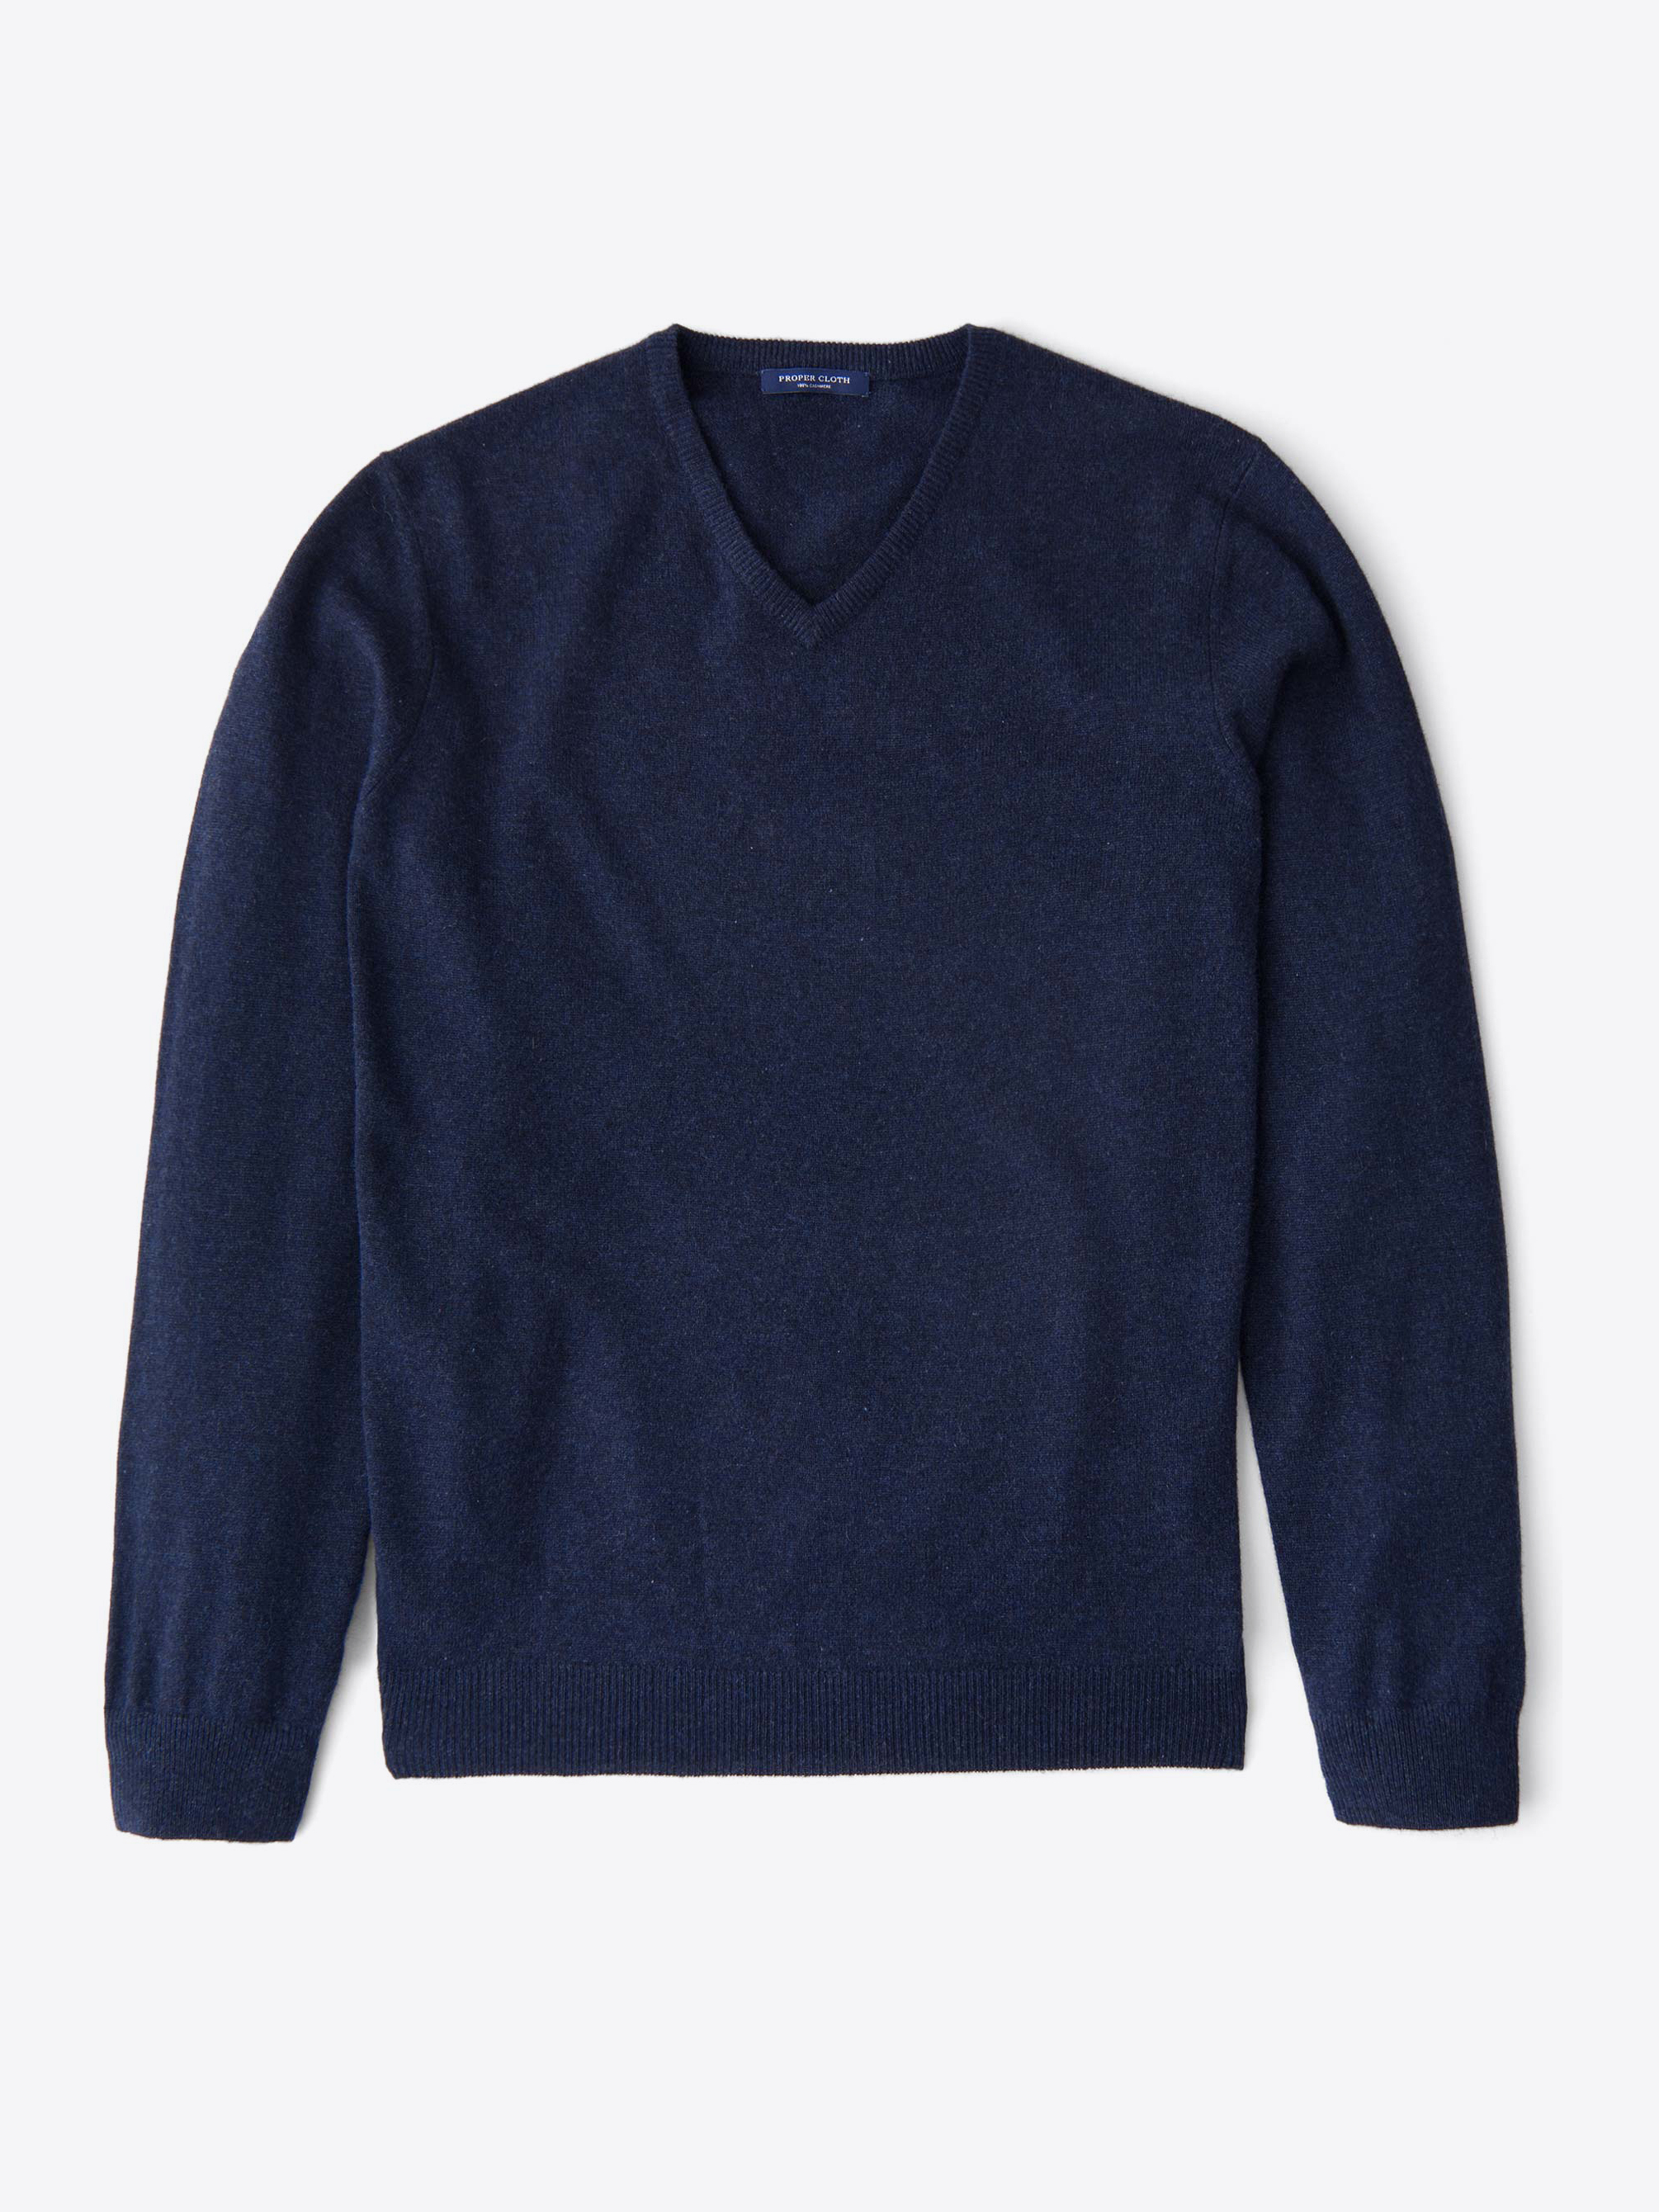 Zoom Image of Navy Melange Cashmere V-Neck Sweater